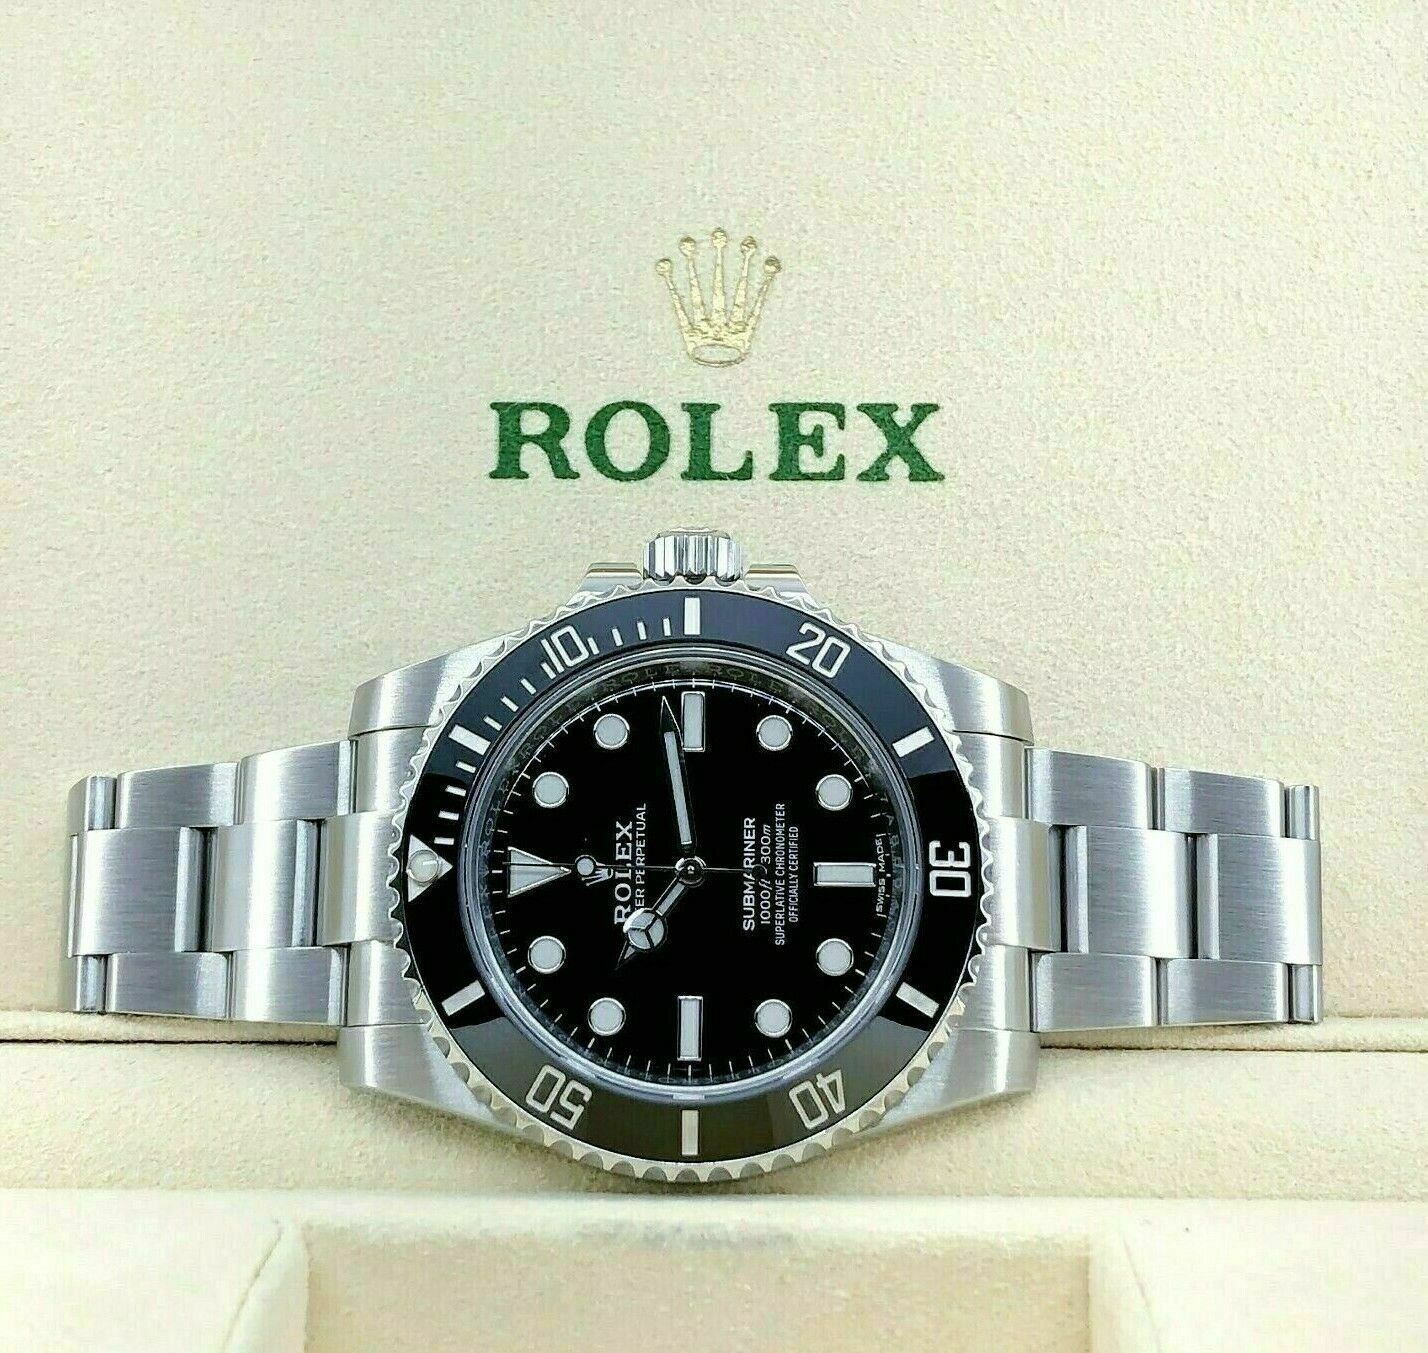 Rolex Ceramic Black Submariner No Date Stainless Steel Watch Ref 114060 Box Card